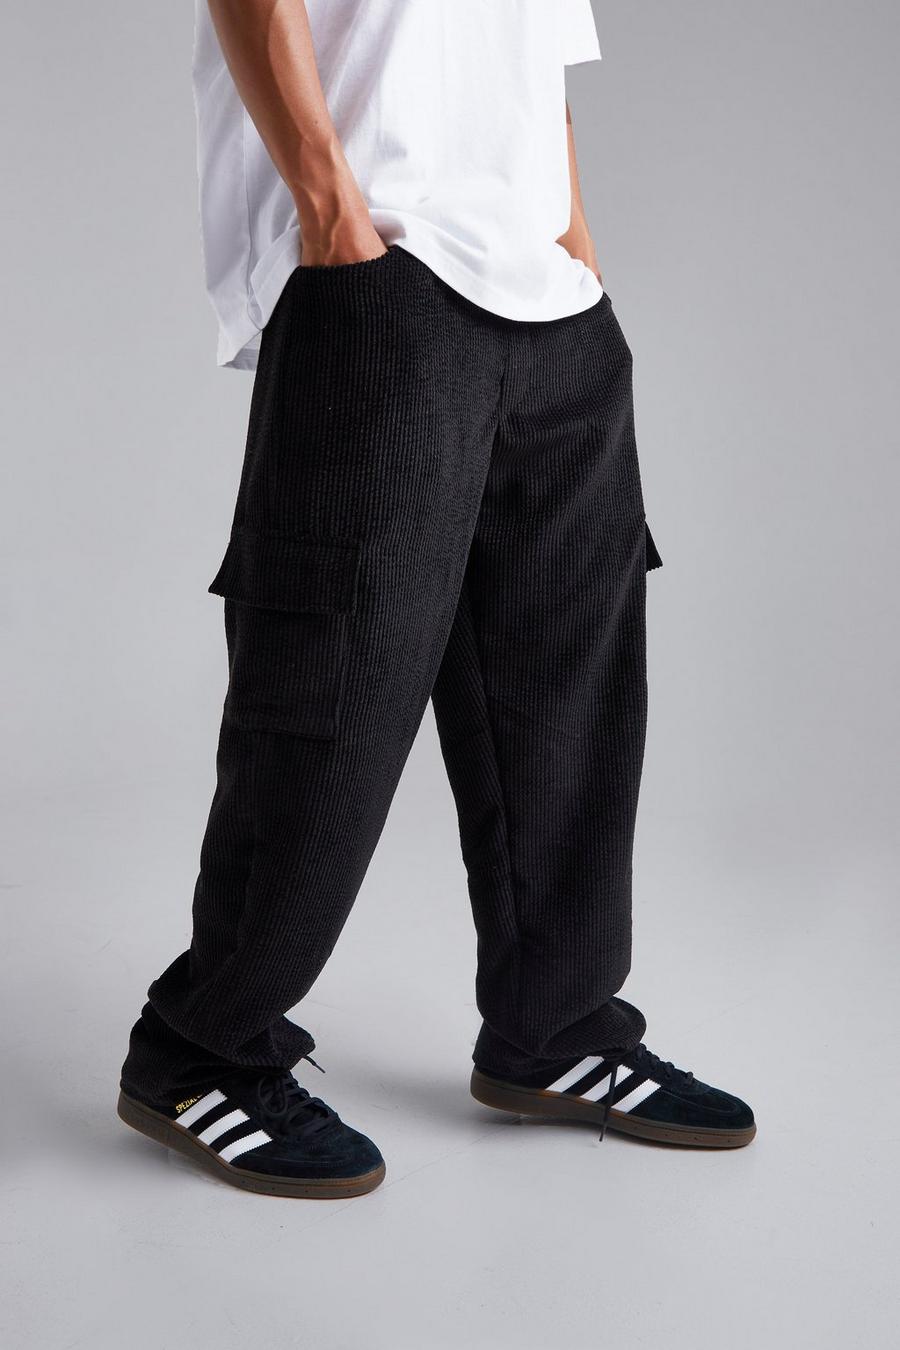 Pantalón de pana con multibolsillos estilo skate, Black nero